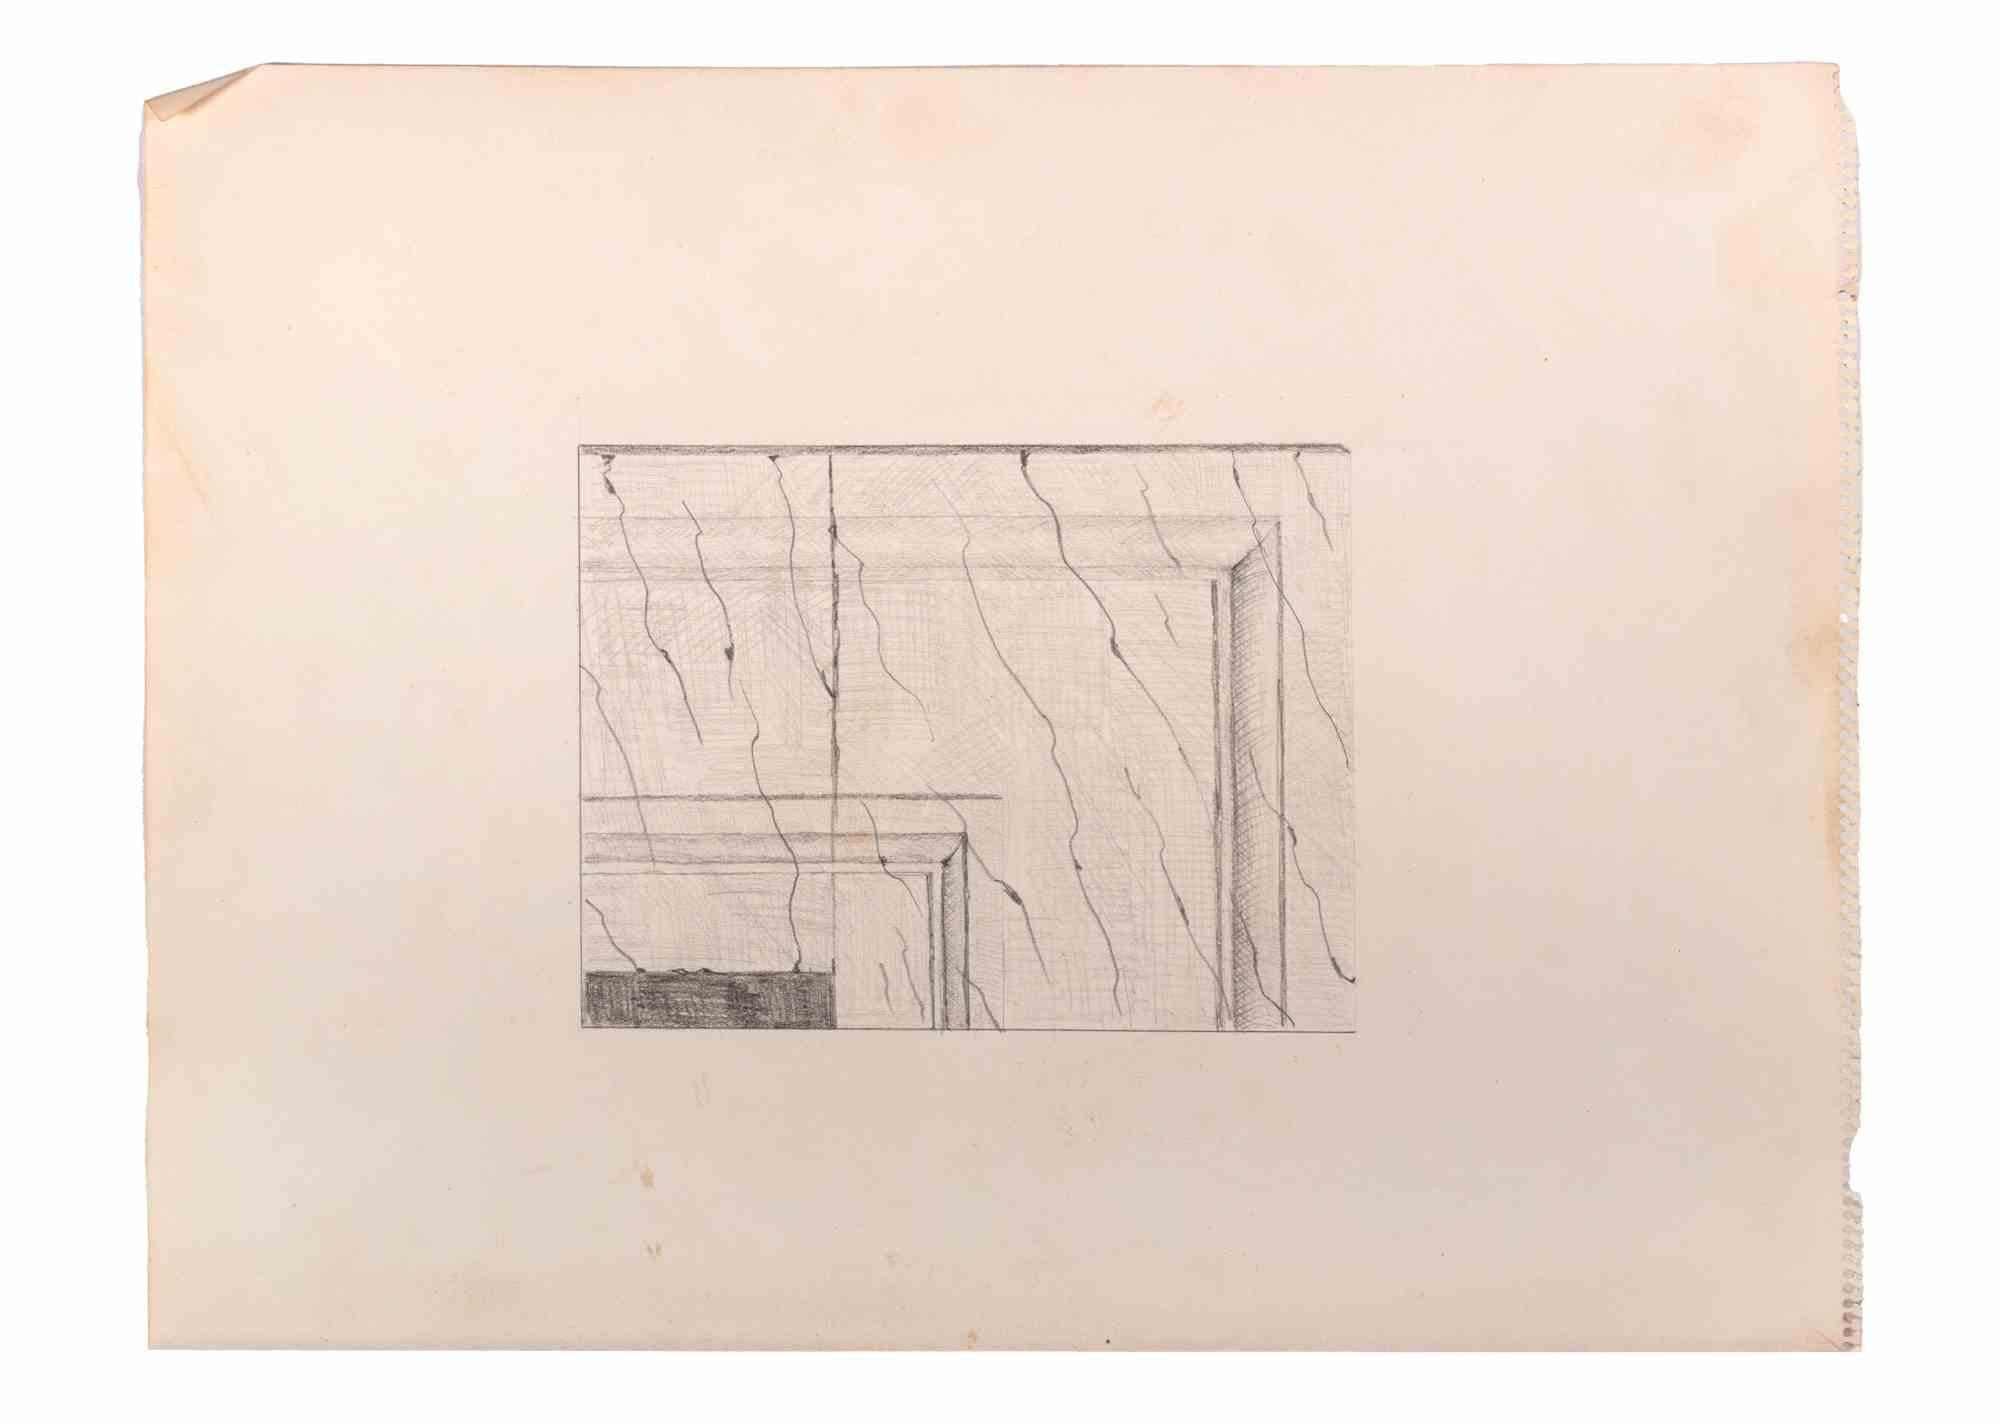 Ideal Decoration ist ein Kunstwerk des Künstlers Carlo Parisi (1922-2007) aus dem Jahr 1935.

Schwarz-weiße Zeichnung auf Papier.

Gute Bedingungen.

Carlo Parisi (1924-2017) war ein italienischer Maler. Er lebte lange Zeit in Mailand. Er hat mit